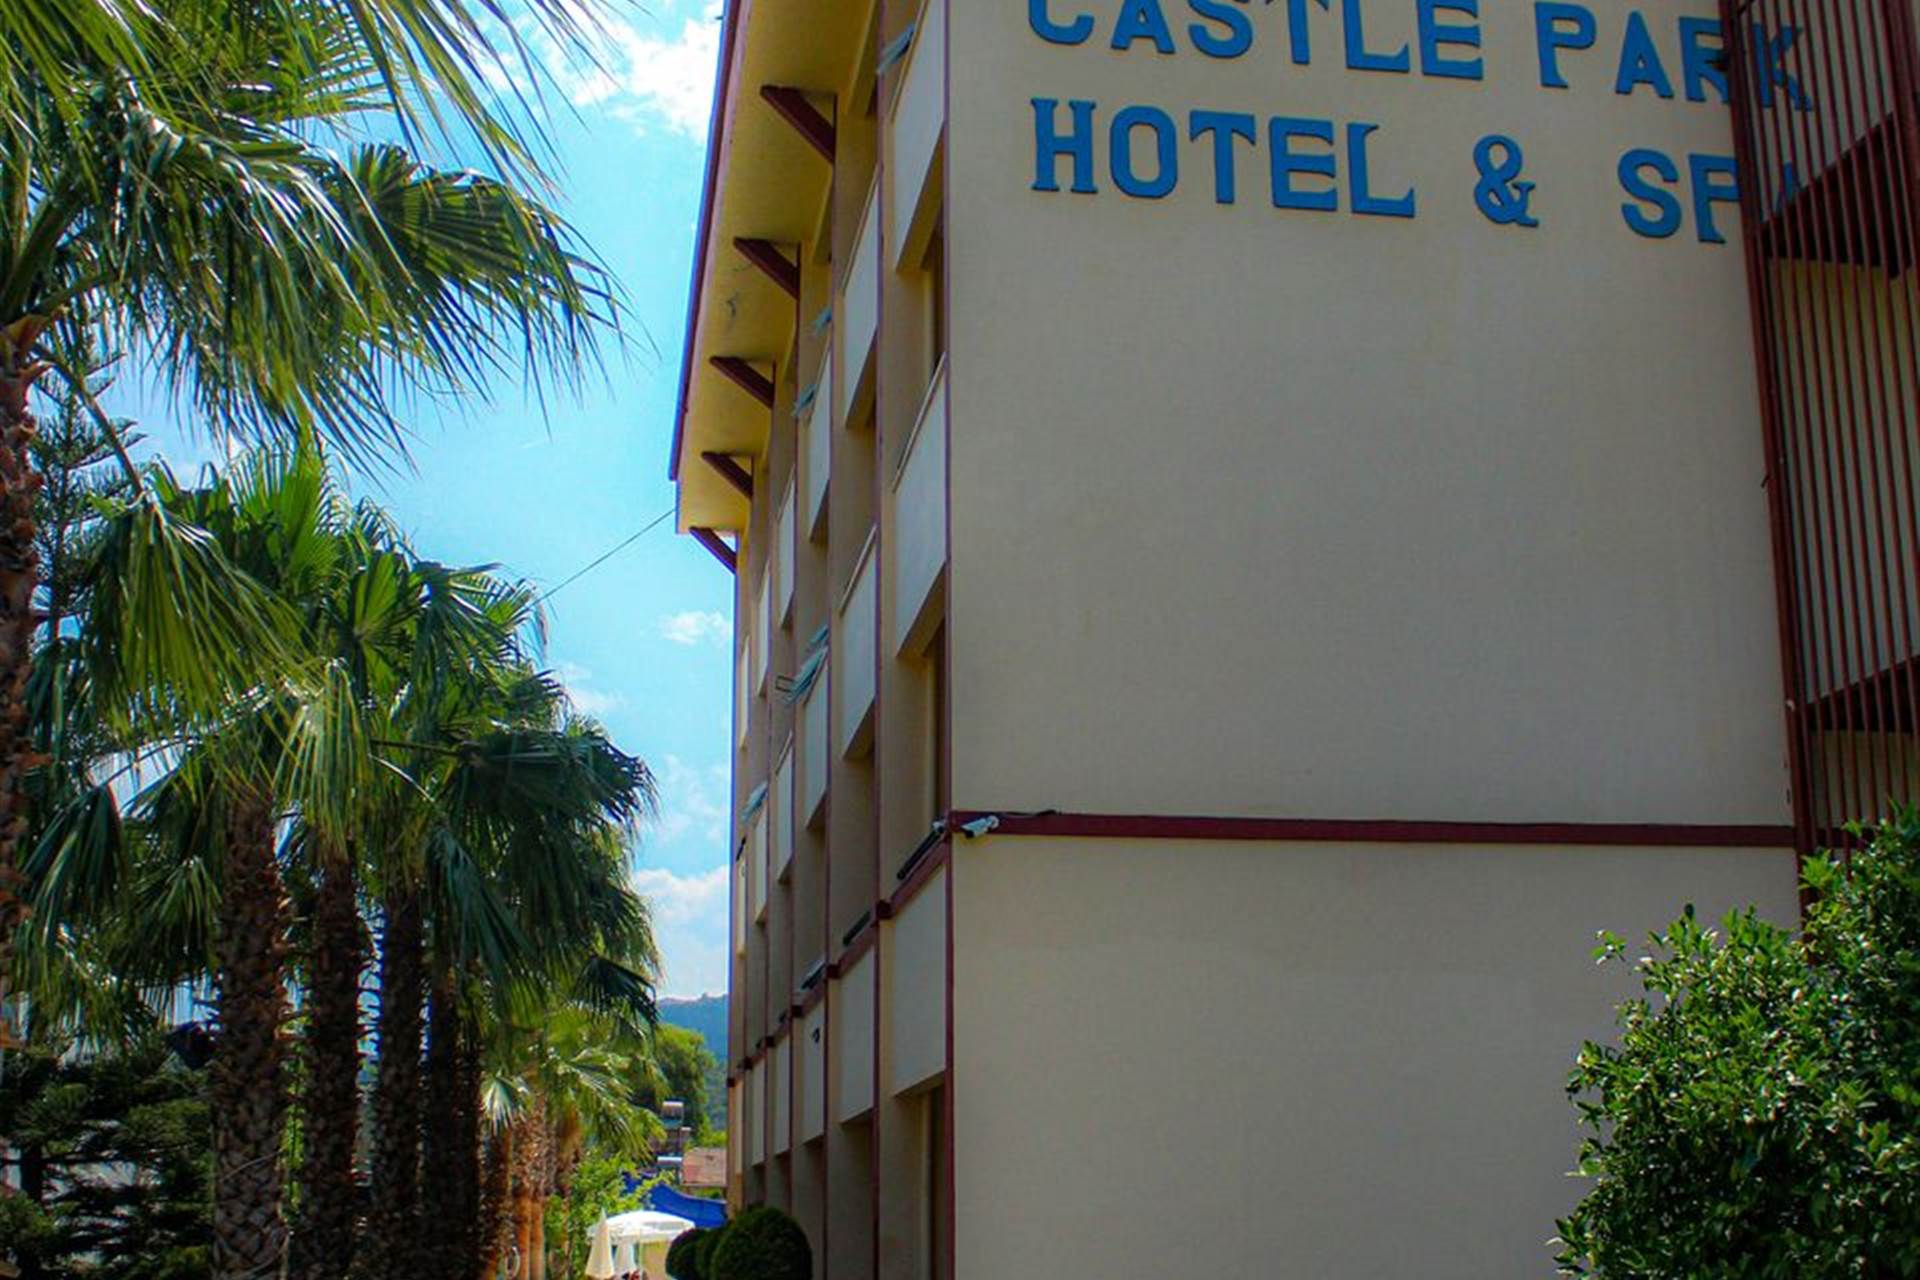 CASTLE PARK HOTEL